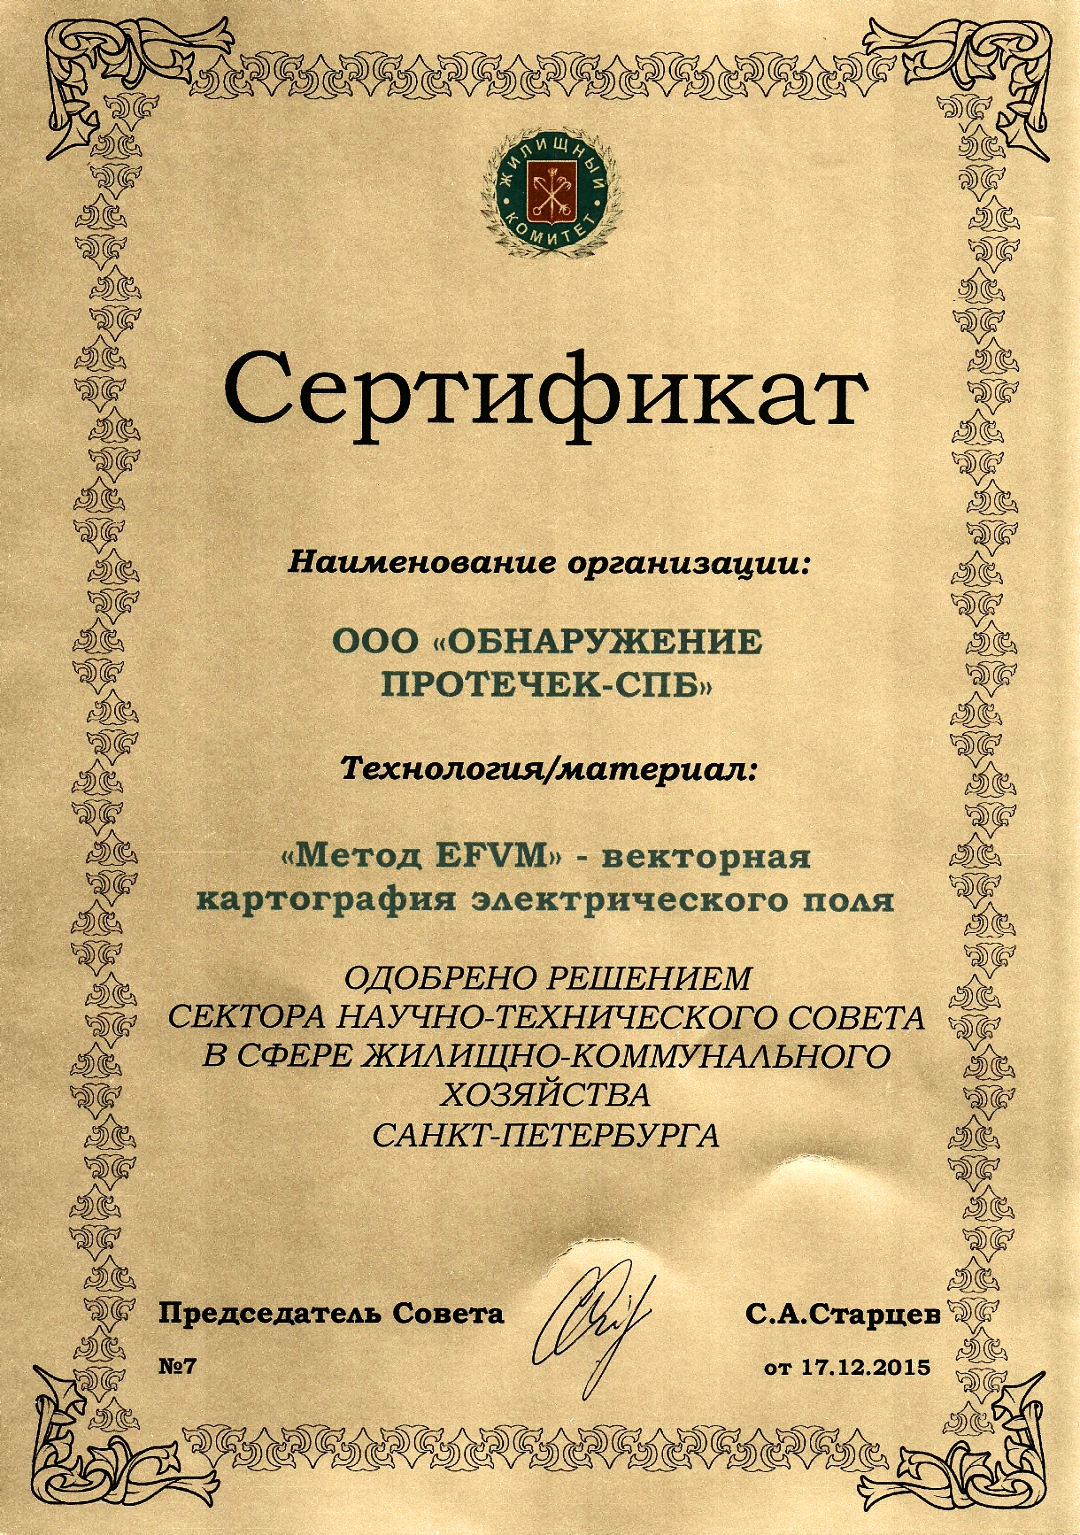 Сертификат на EFVM